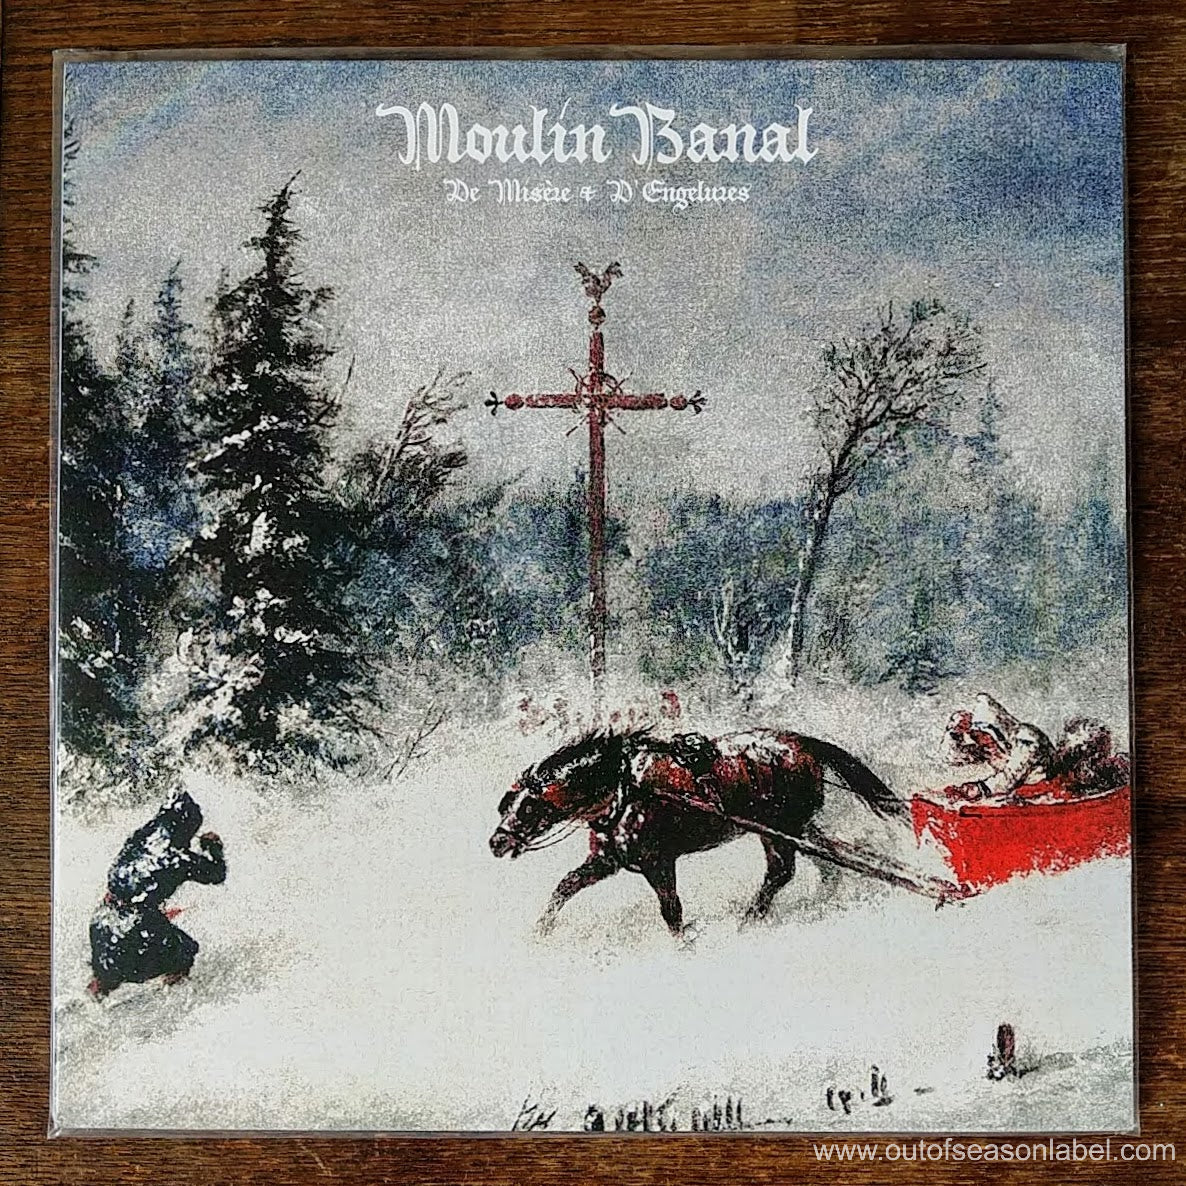 [SOLD OUT] MOULIN BANAL "De Misère et D'Engelures" Vinyl LP